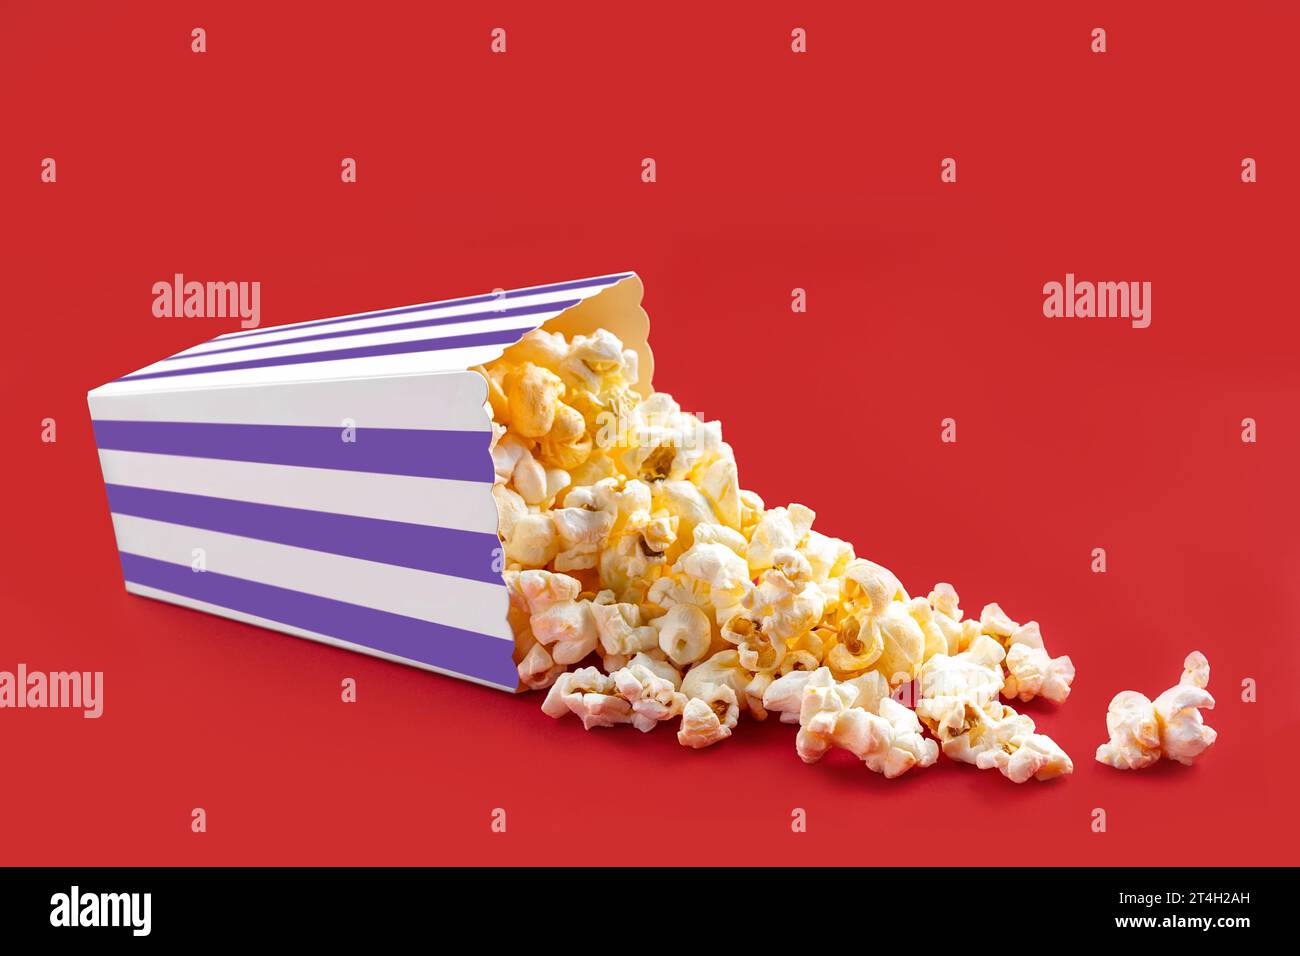 Gustosi popcorn al formaggio che cadono da una scatola di cartone a righe viola o da un secchio, isolato su sfondo rosso. Dispersione di semi di popcorn. Fast food, snack. Foto Stock